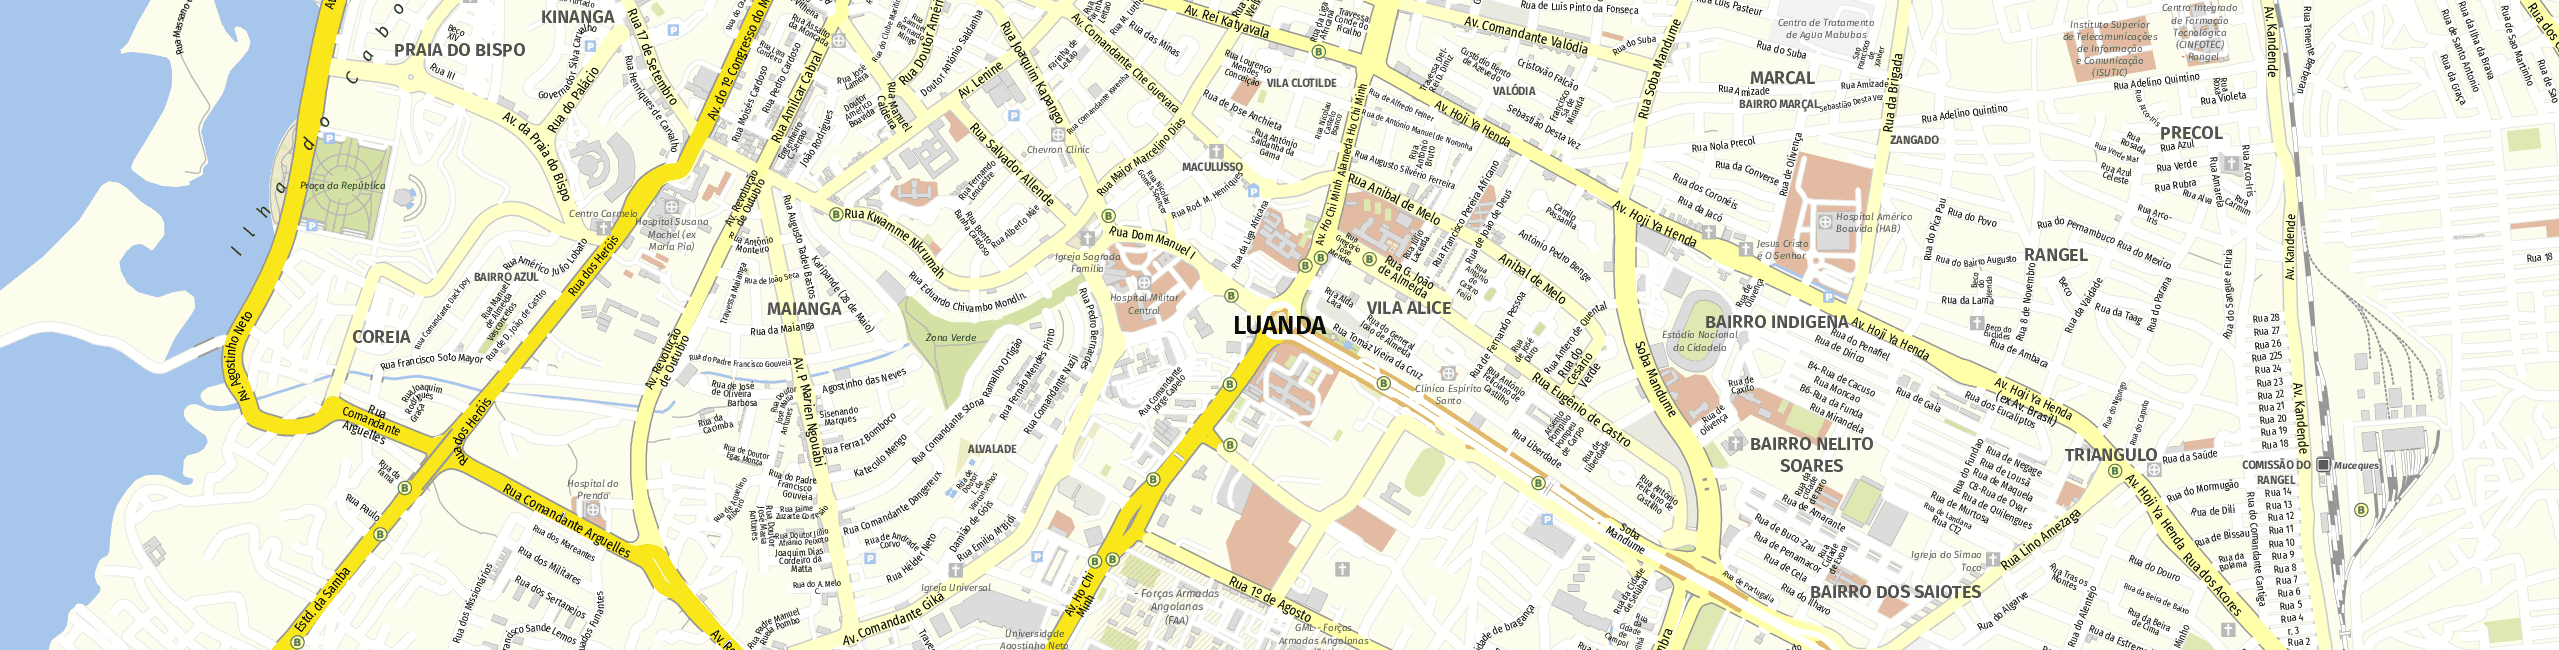 Stadtplan Luanda zum Downloaden.